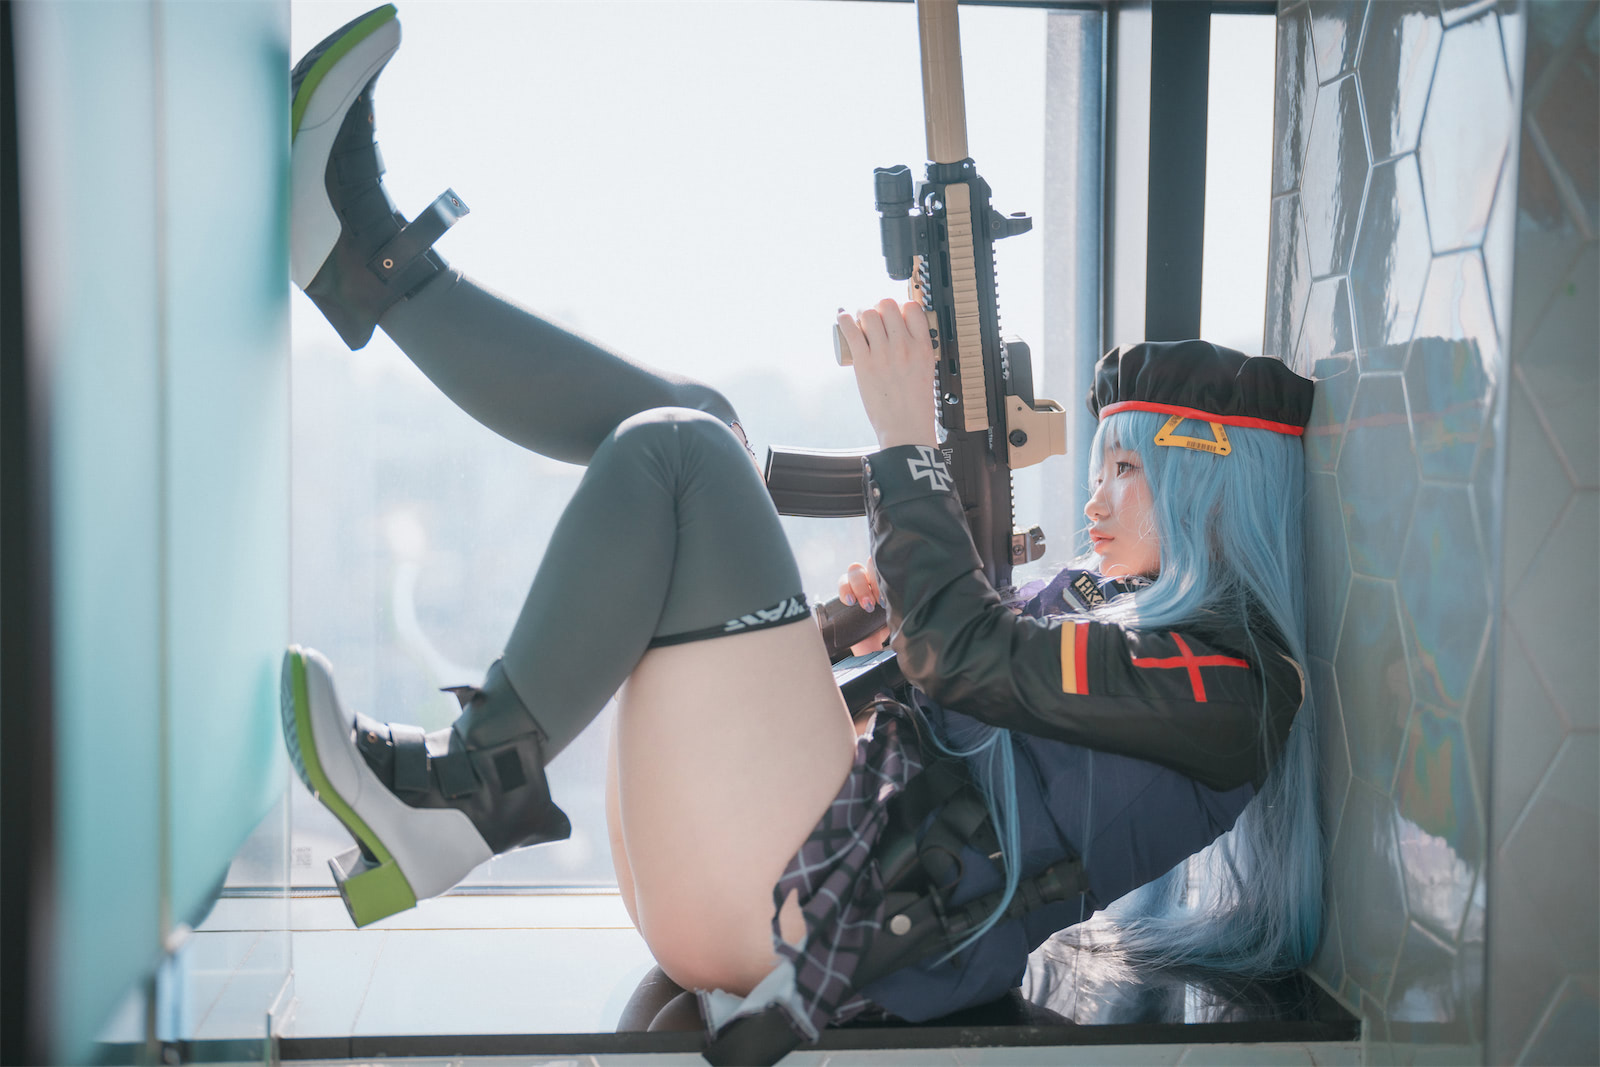 Mimmi 少女前线HK4163